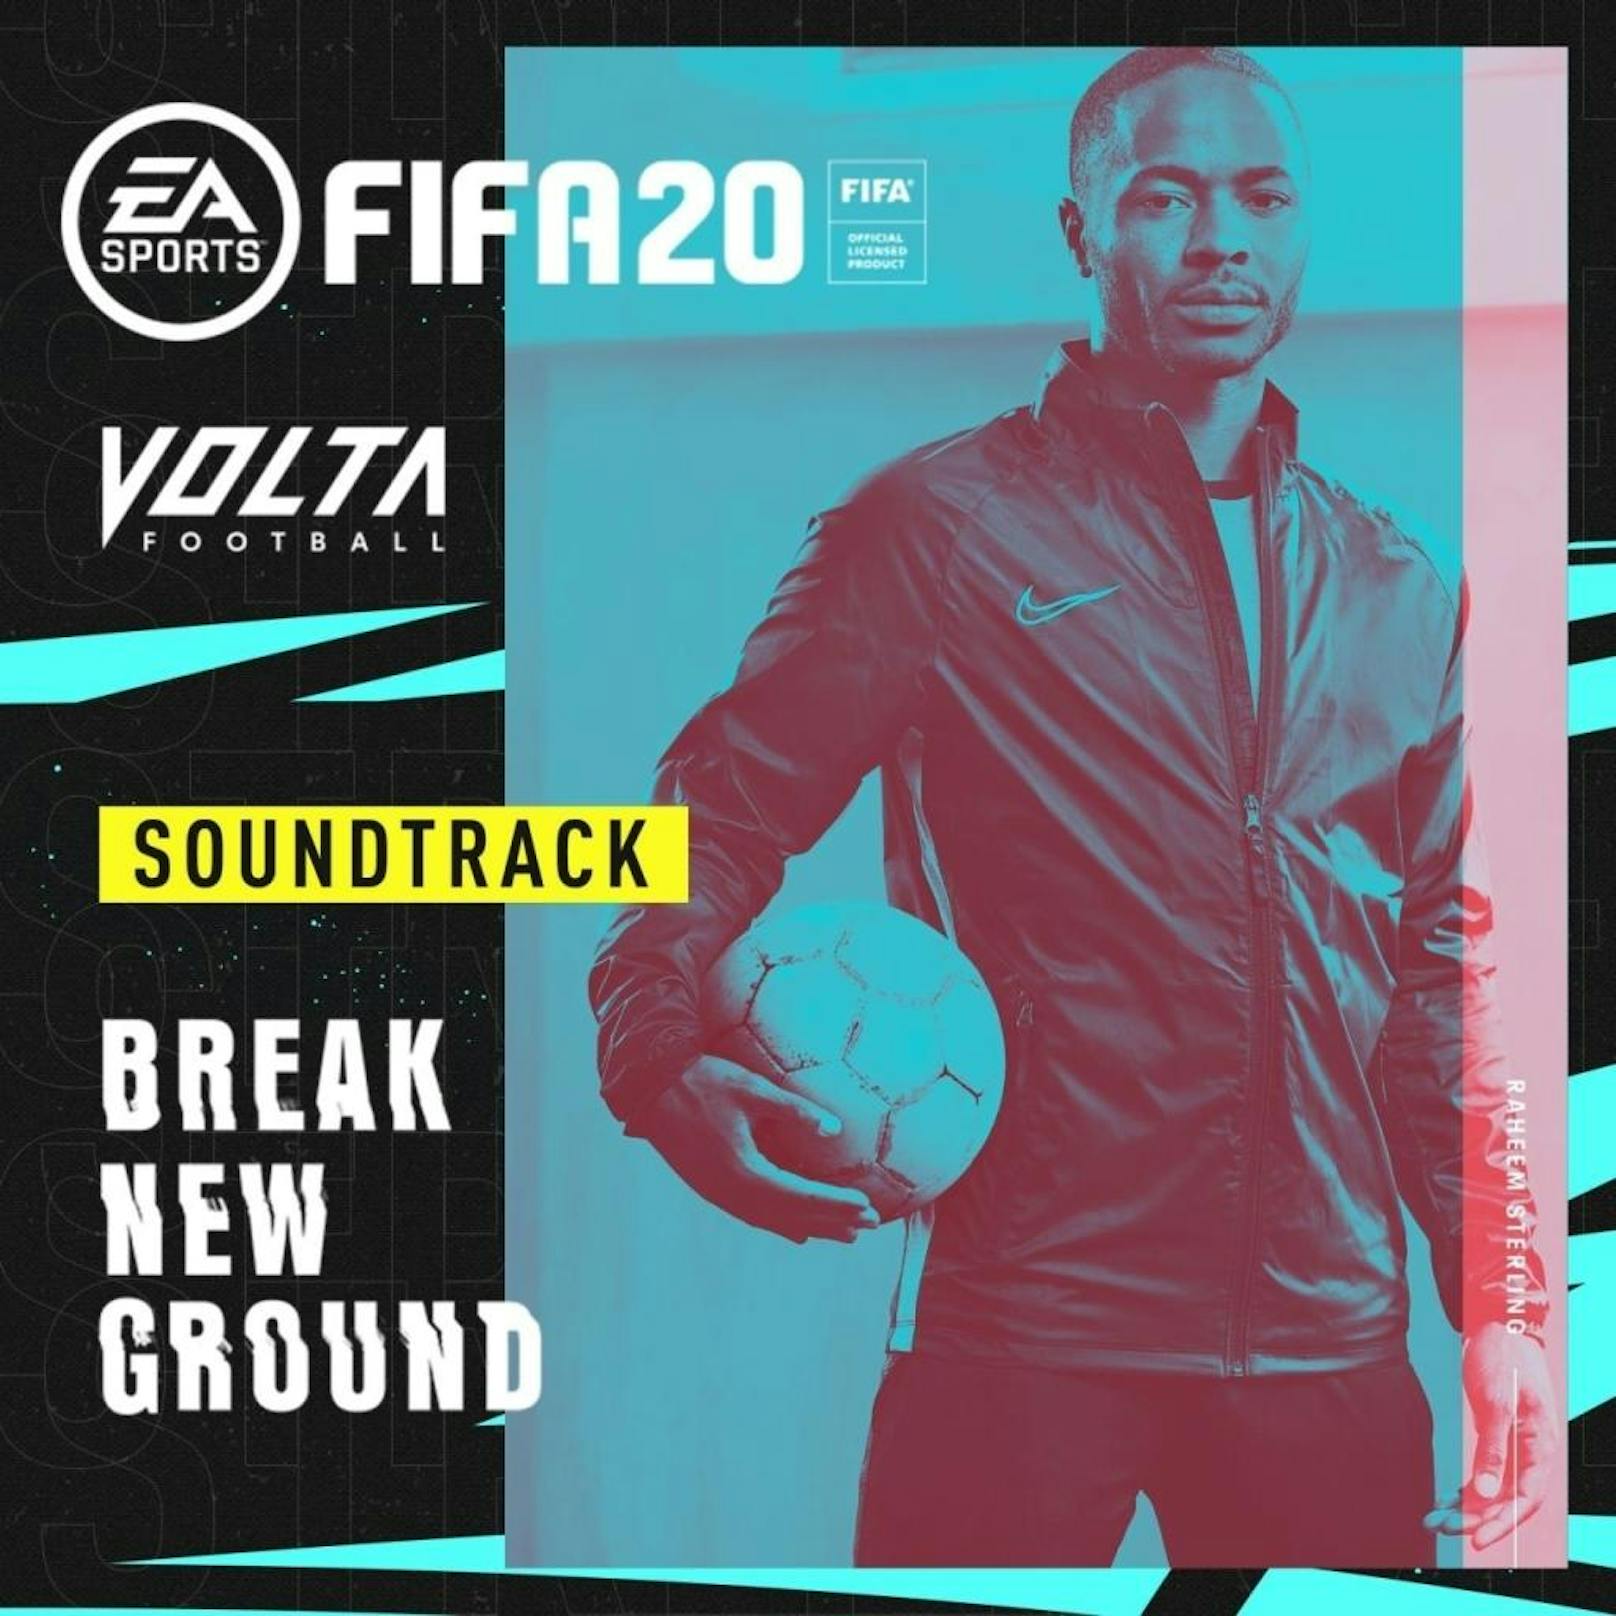 Electronic Arts hat heute den offiziellen "EA Sports FIFA 20"-Soundtrack bekanntgegeben. Er umfasst neue Musik von Major Lazer, die im neuen, von der weltweiten Straßenfußball-Kultur inspirierten "Volta Football"-Modus enthalten ist. Die Musik von "FIFA 20" vereint aufstrebende und weltberühmte Musiker und sorgt so für eine vielfältige Tracklist, in der sich das Dance-Trio Major Lazer von Grammy-Gewinner Diplo ebenso wiederfindet wie der Nachwuchsstar Anderson Paak, das weltberühmte Electronic-Duo Disclosure oder der Dance-Pionier Don Diablo. Der vollständige "FIFA 20"-Soundtrack steht ab 13. September auf Spotify, Apple und Deezer bereit.